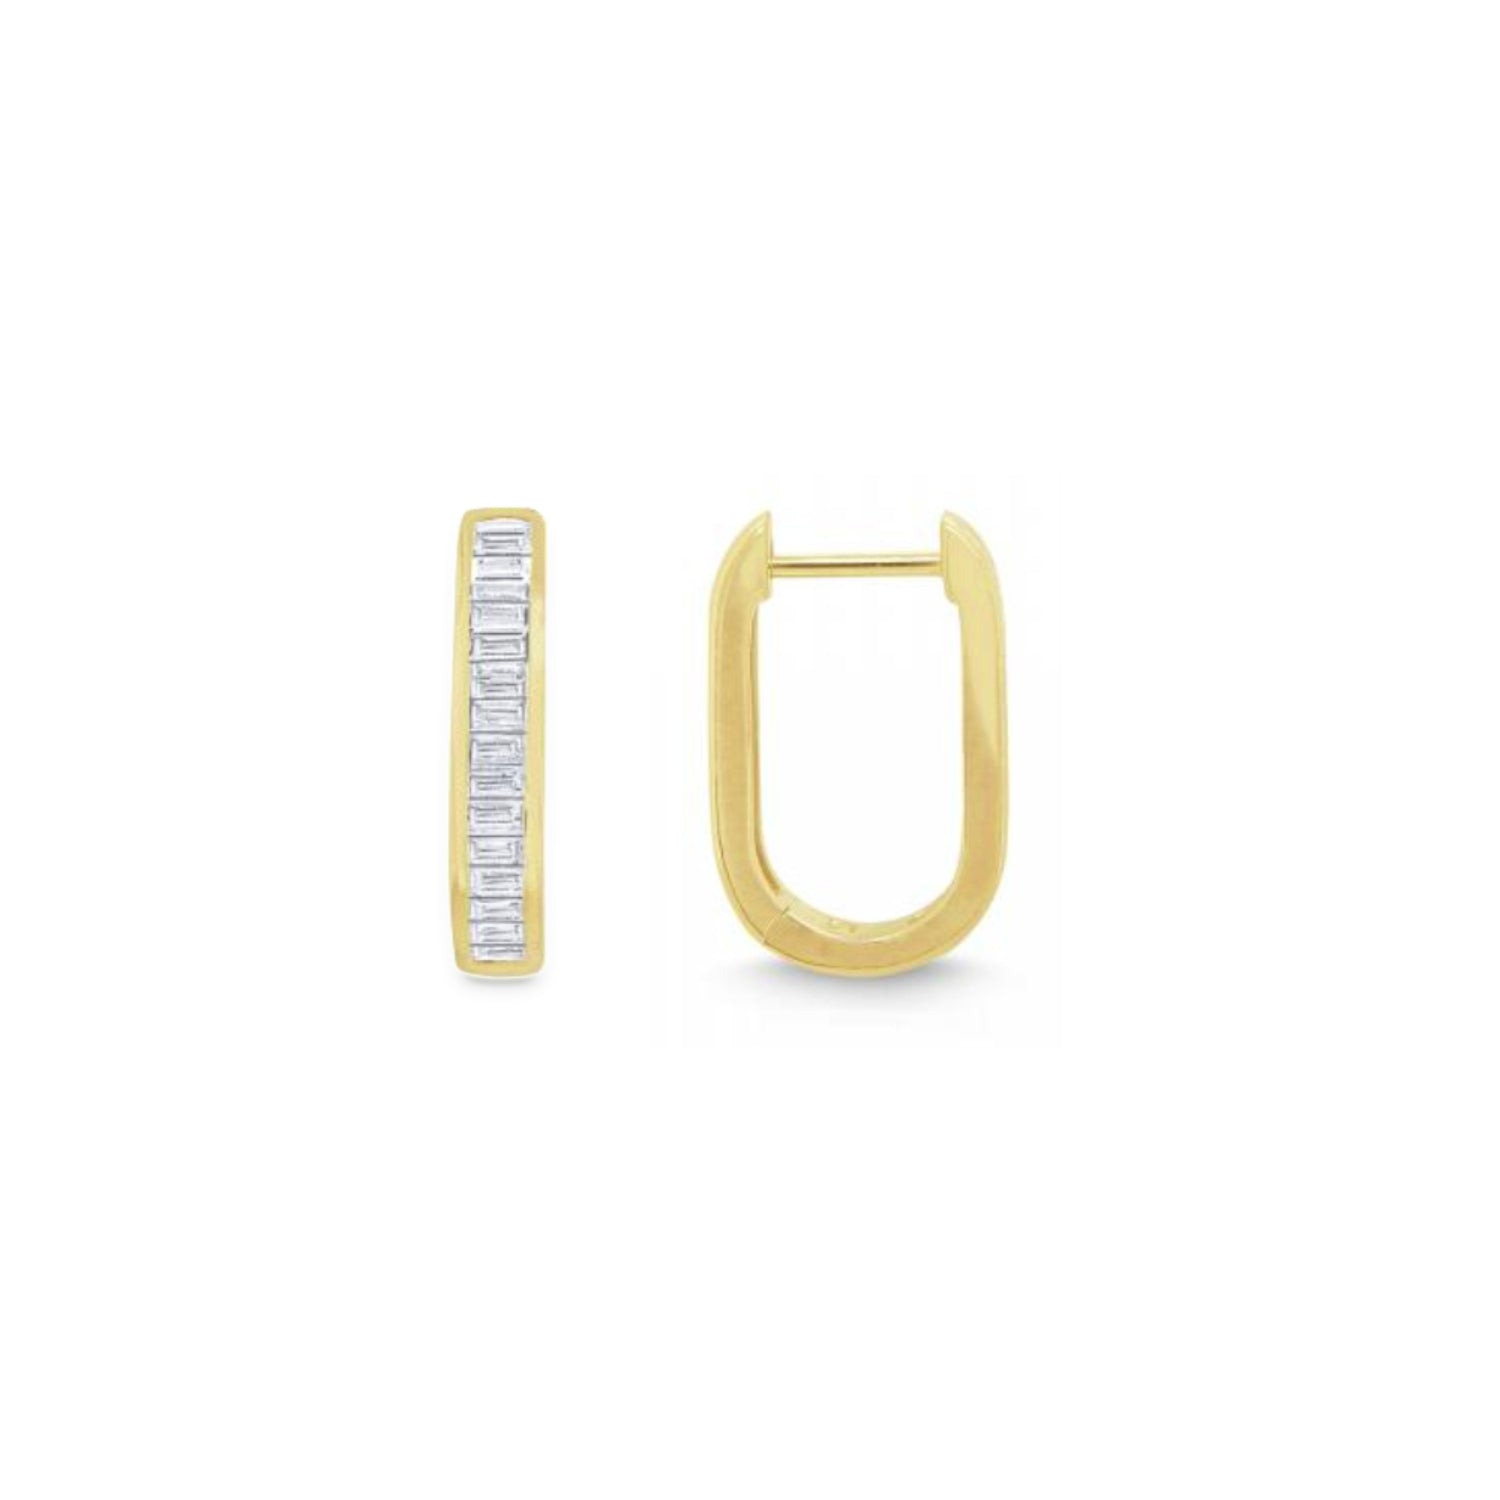 Baguette Cut Diamond Oblong Hoop Earrings in Yellow Gold